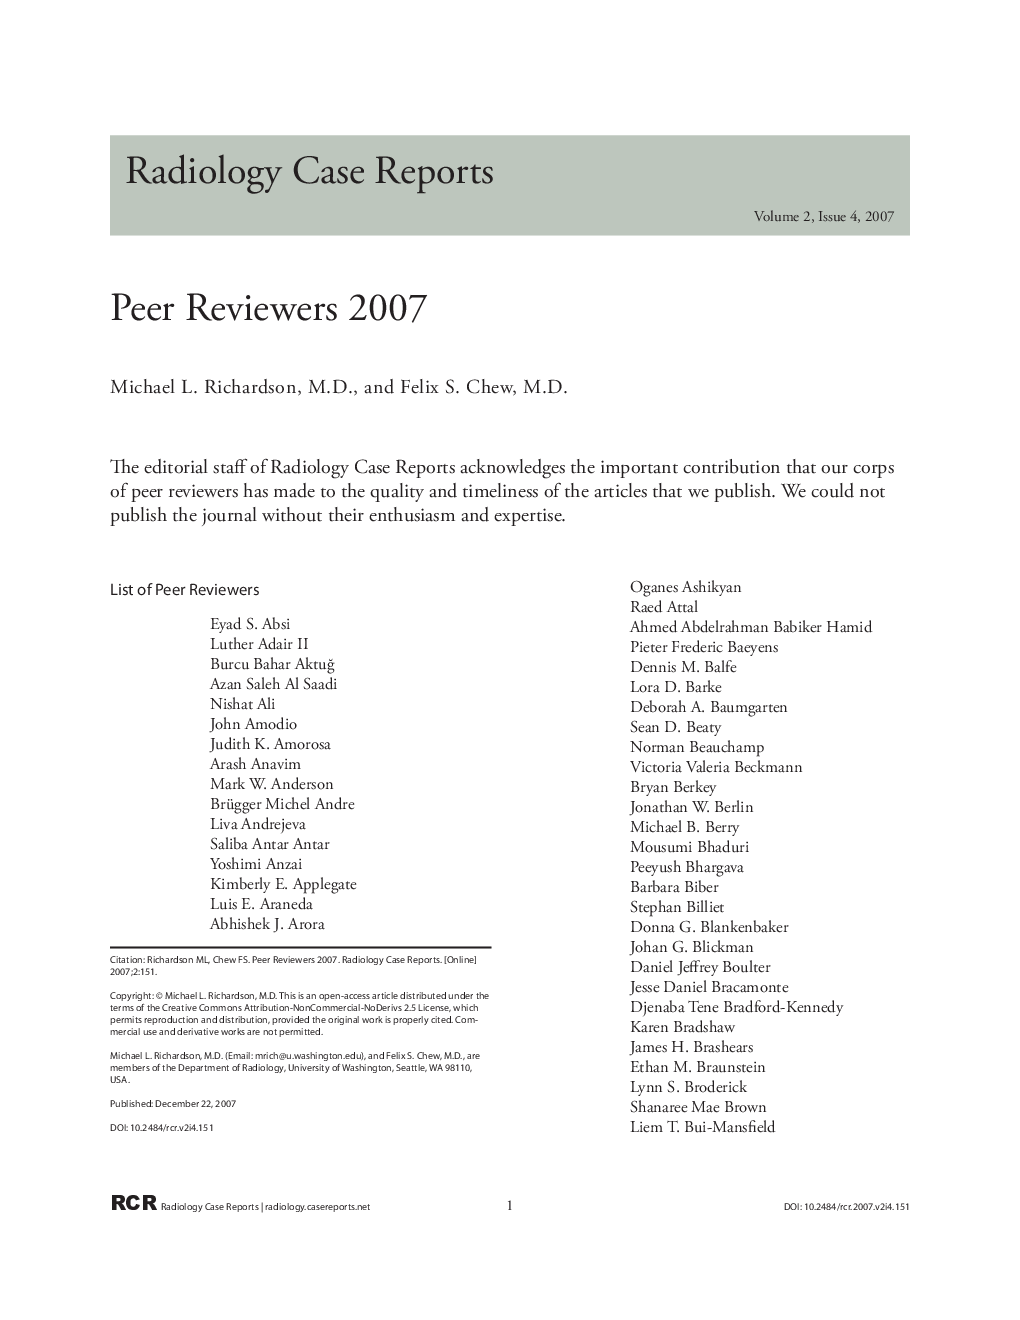 Peer Reviewers 2007